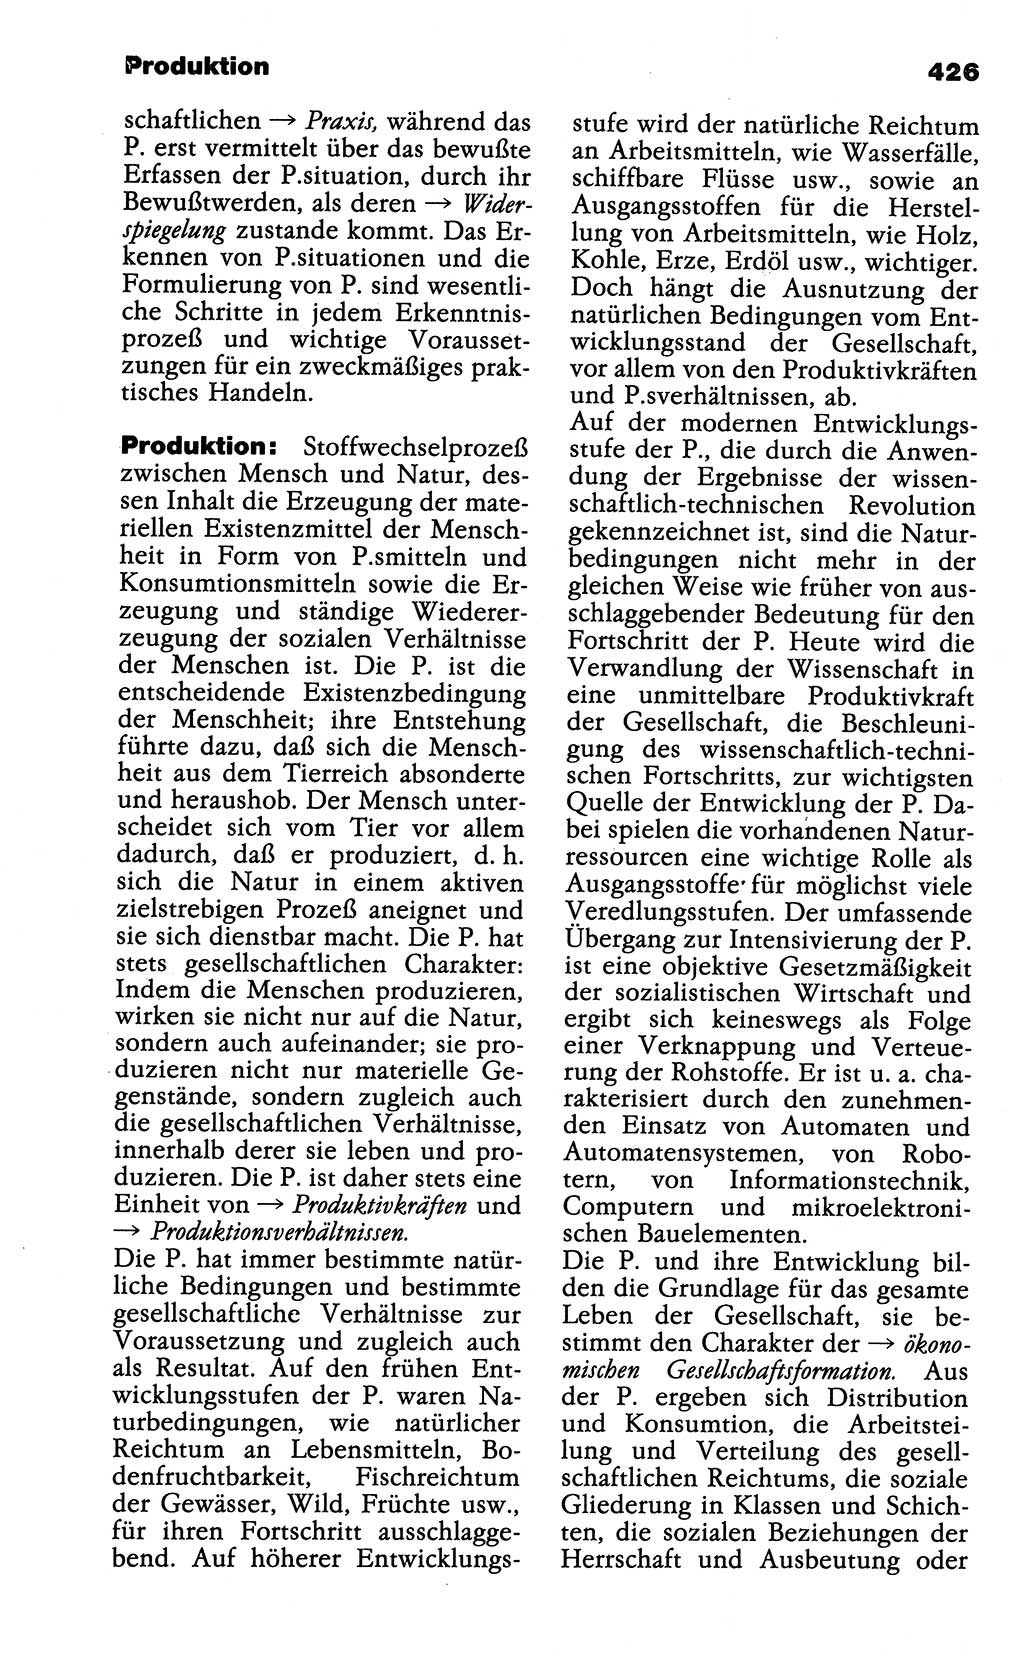 Wörterbuch der marxistisch-leninistischen Philosophie [Deutsche Demokratische Republik (DDR)] 1985, Seite 426 (Wb. ML Phil. DDR 1985, S. 426)